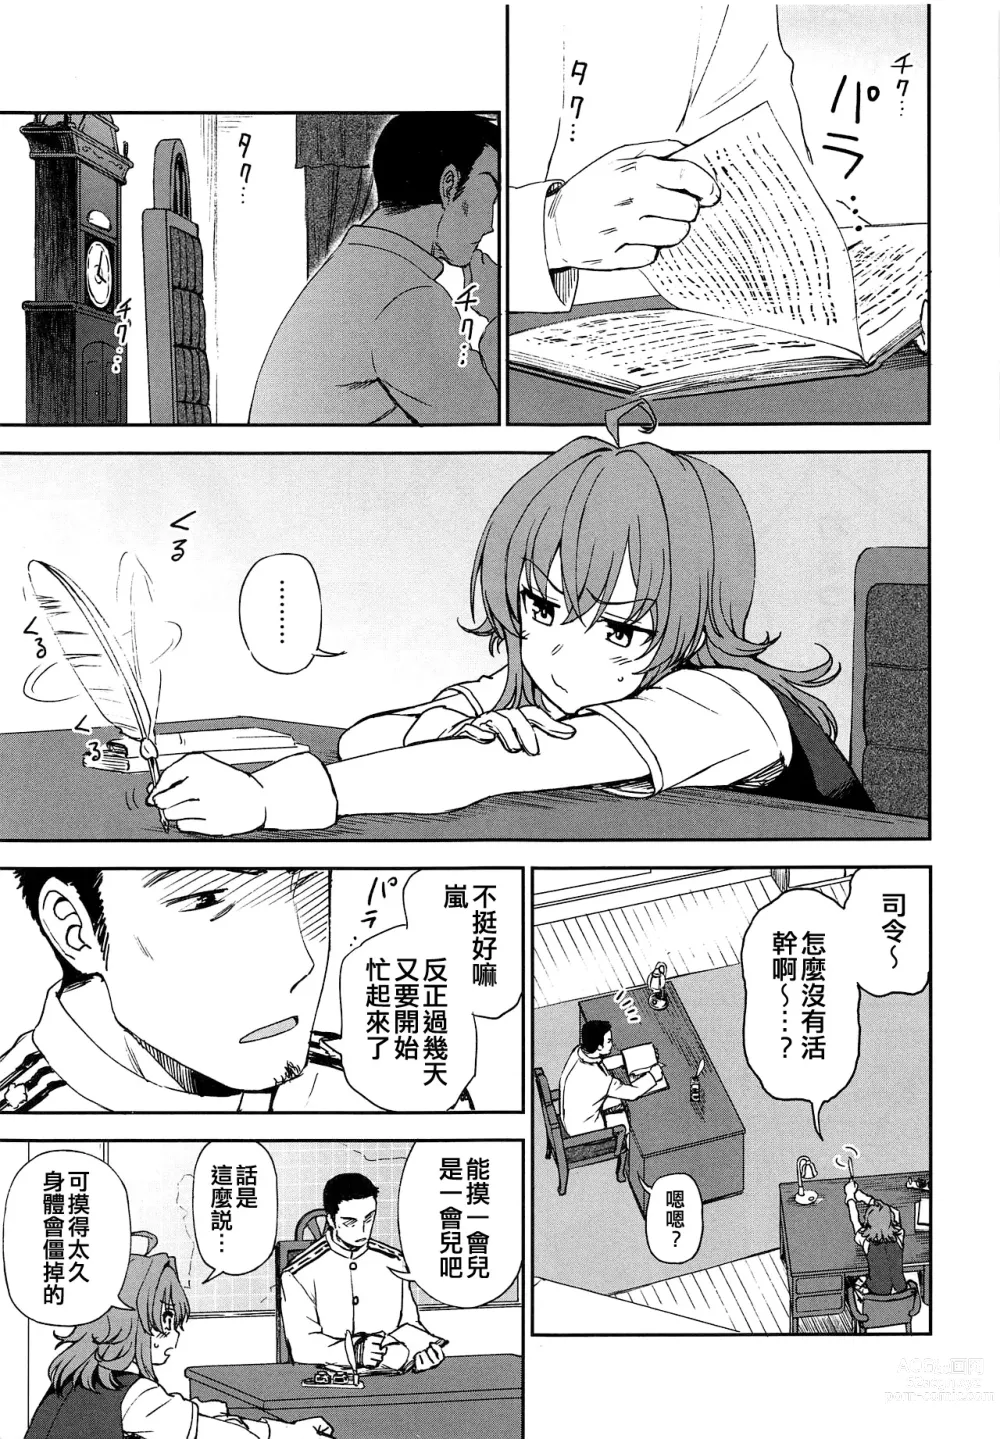 Page 3 of doujinshi Haru no Arashi